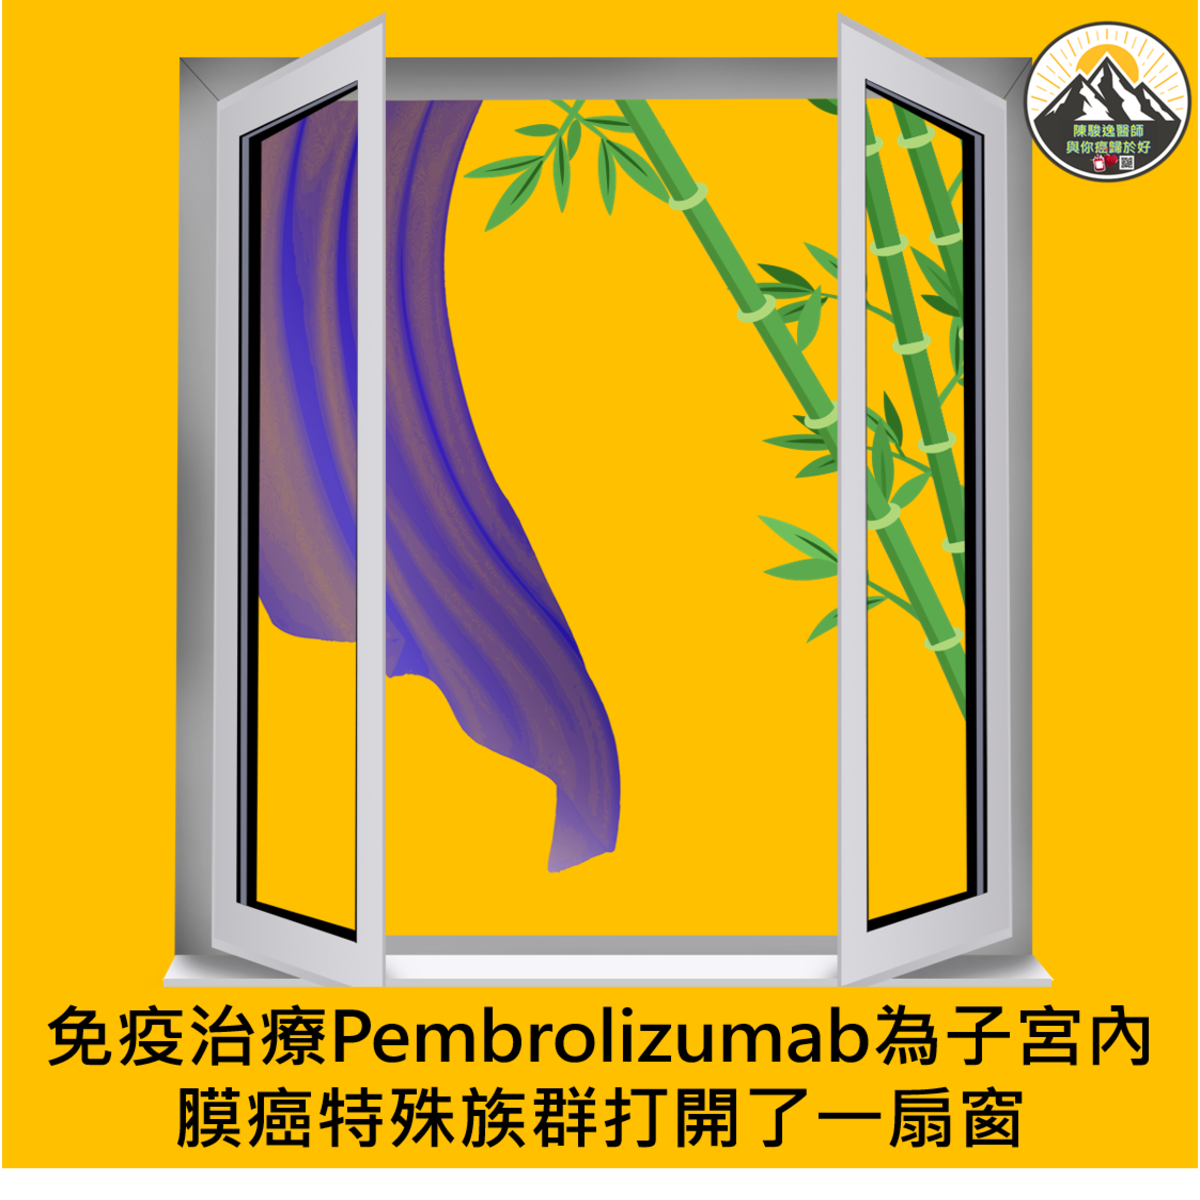 免疫治療Pembrolizumab為子宮內膜癌特殊族群打開了一扇窗